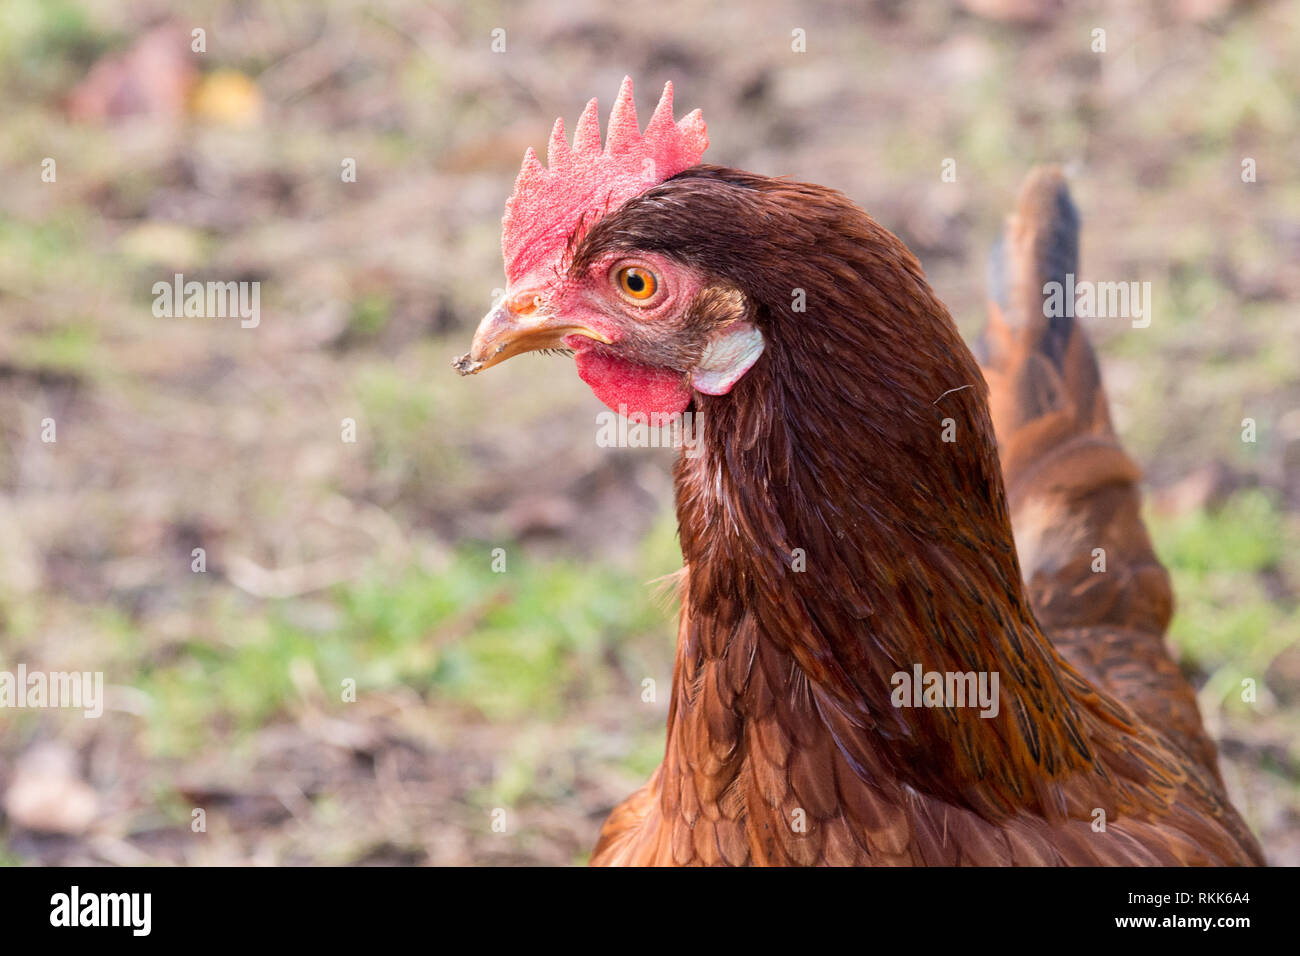 Ritratto di una brown hen in una fattoria biologica sull'erba Foto Stock